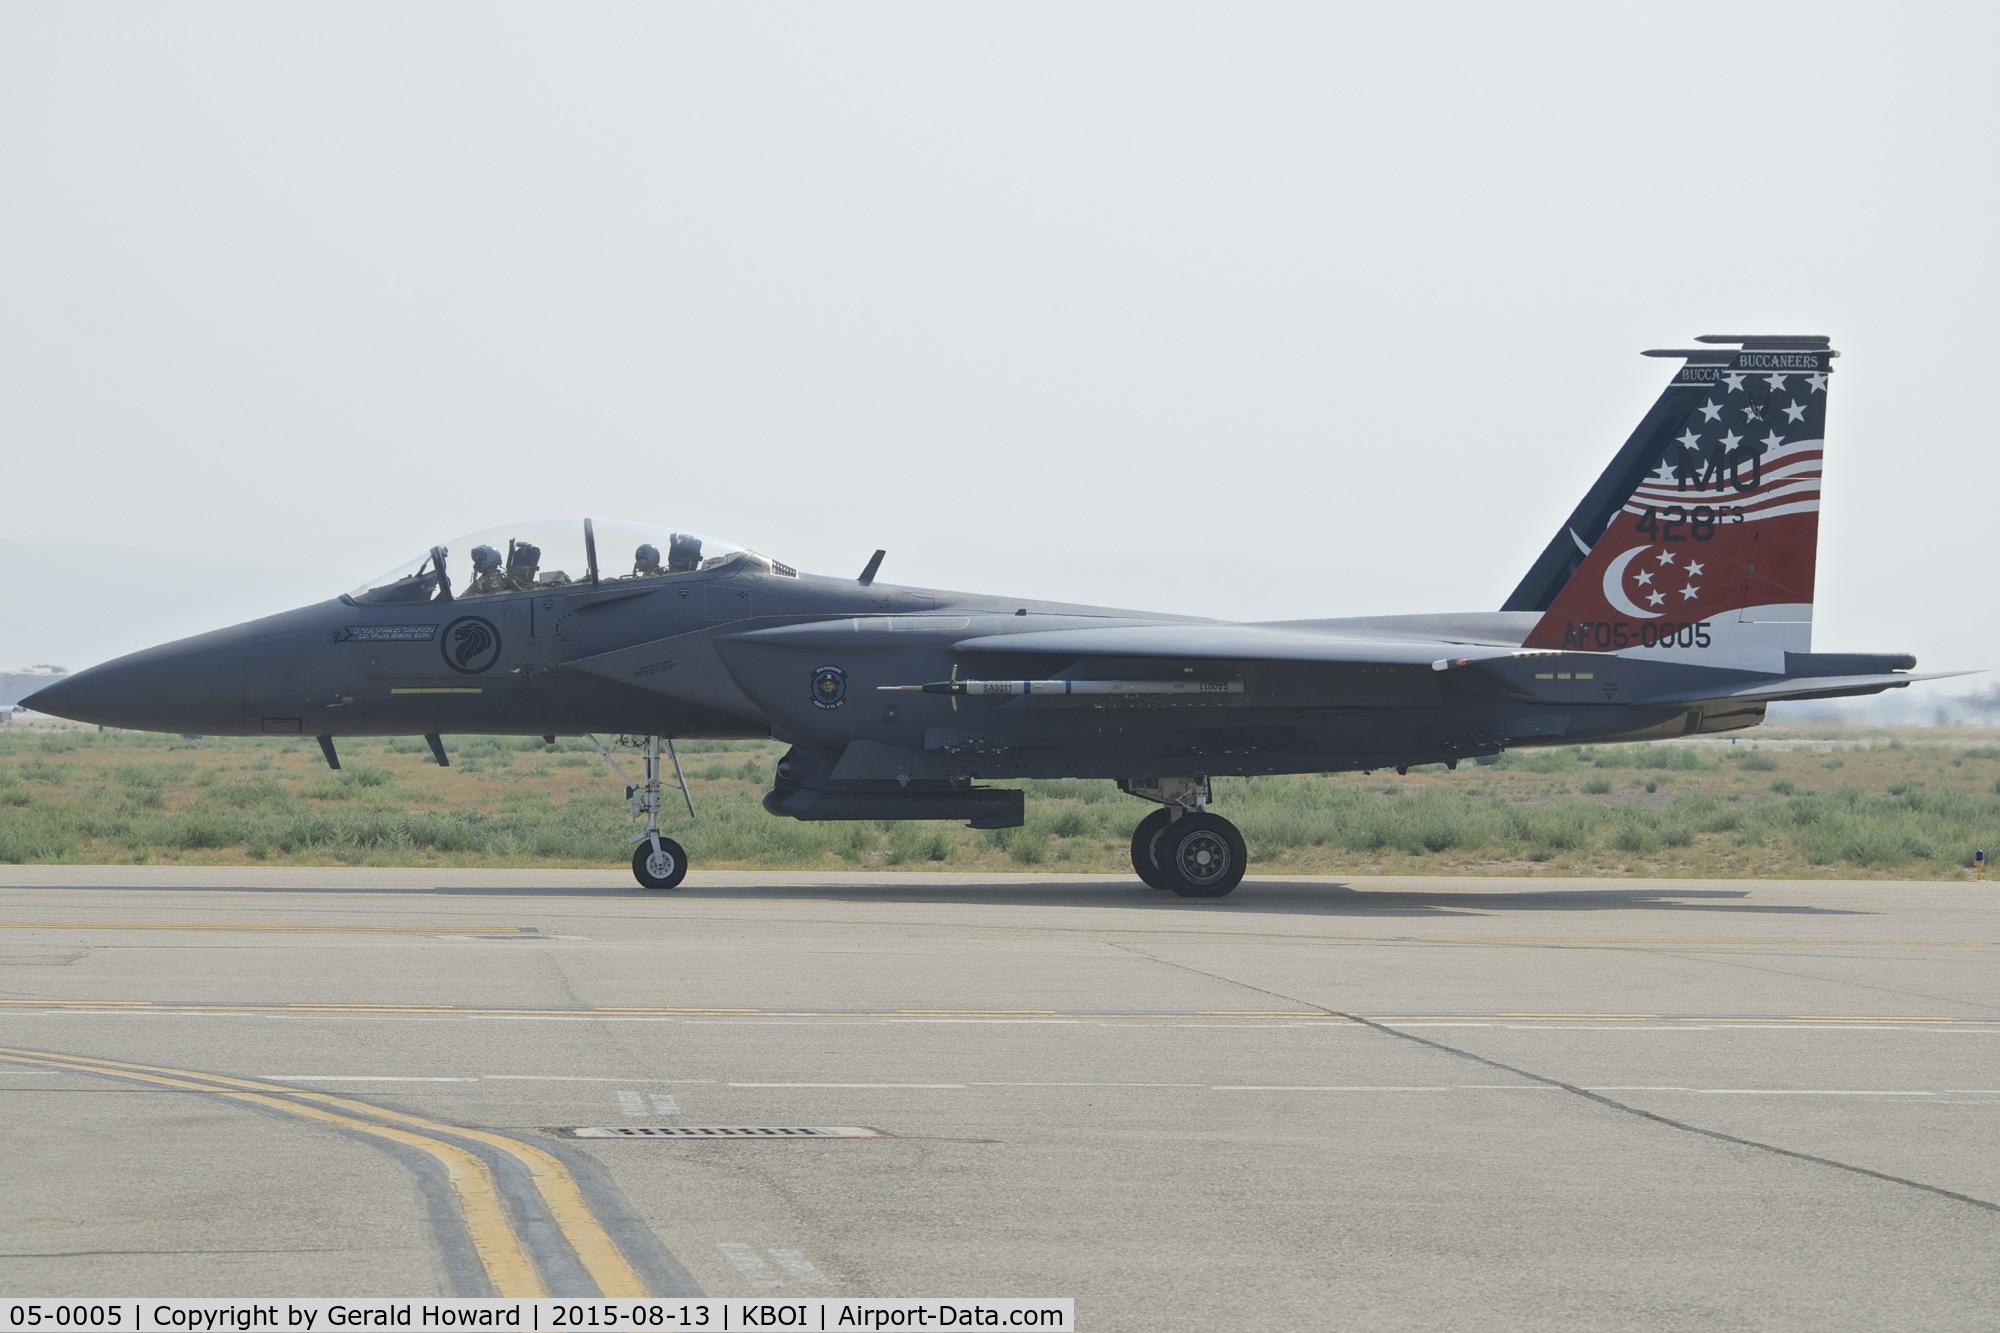 05-0005, 2005 Boeing F-15SG Strike Eagle C/N SG5, 428th Fighter Sq.